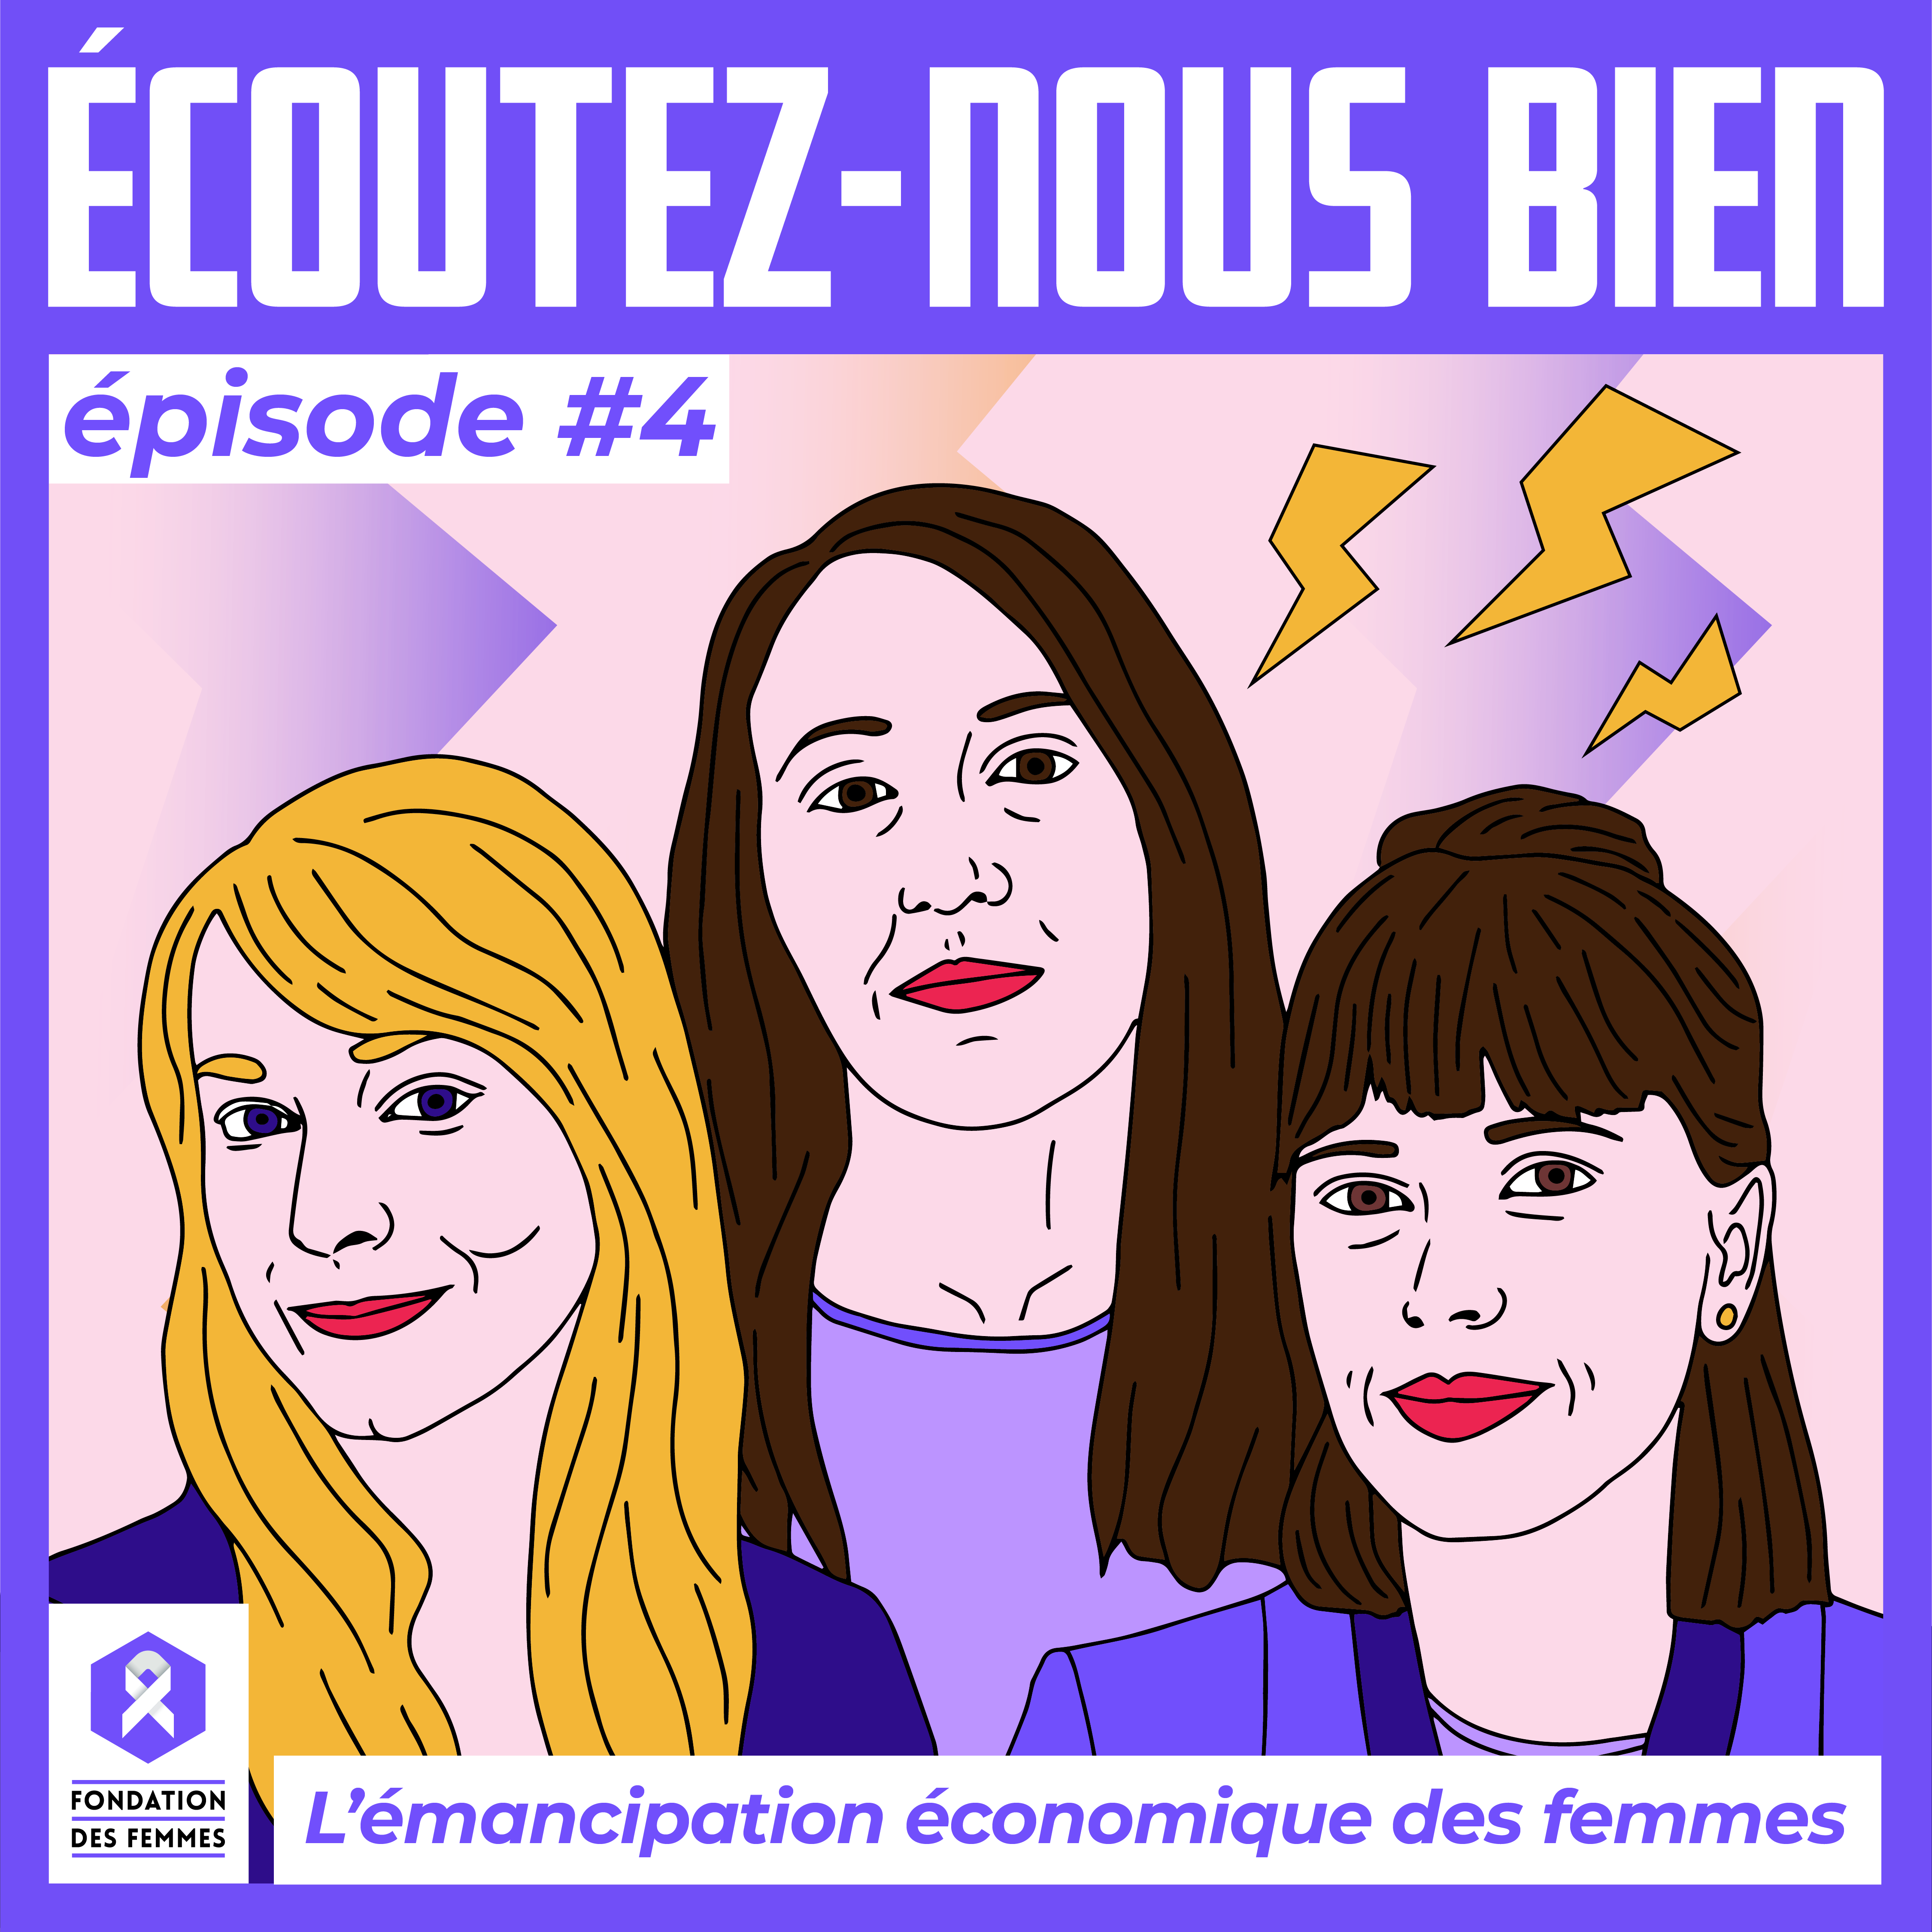 FDF Podcast EcoutezNousBien Episode 4